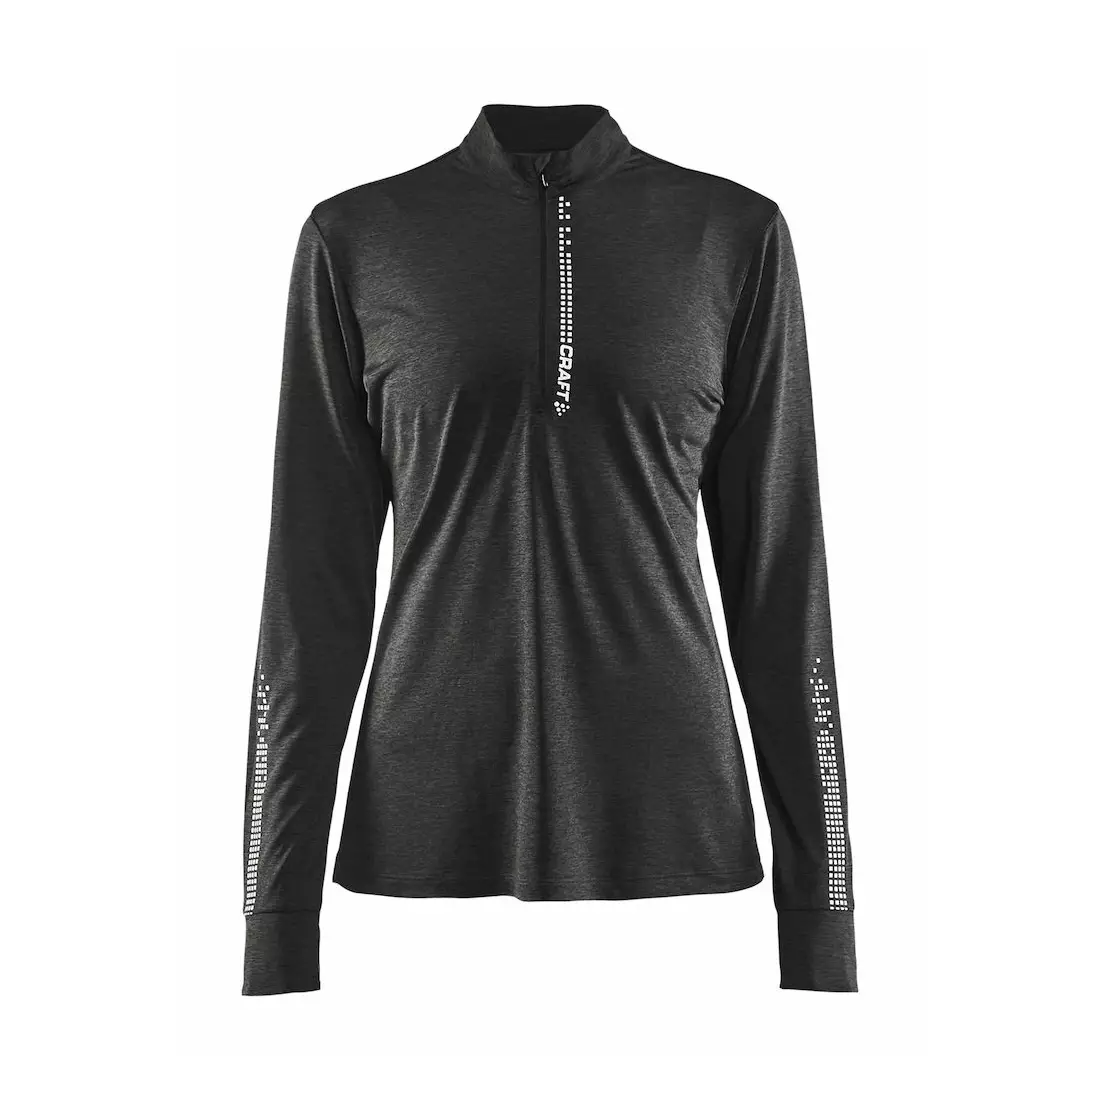 CRAFT REFLECTIVE ZIP 1905499-998000 dámské běžecké tričko s dlouhým rukávem černé